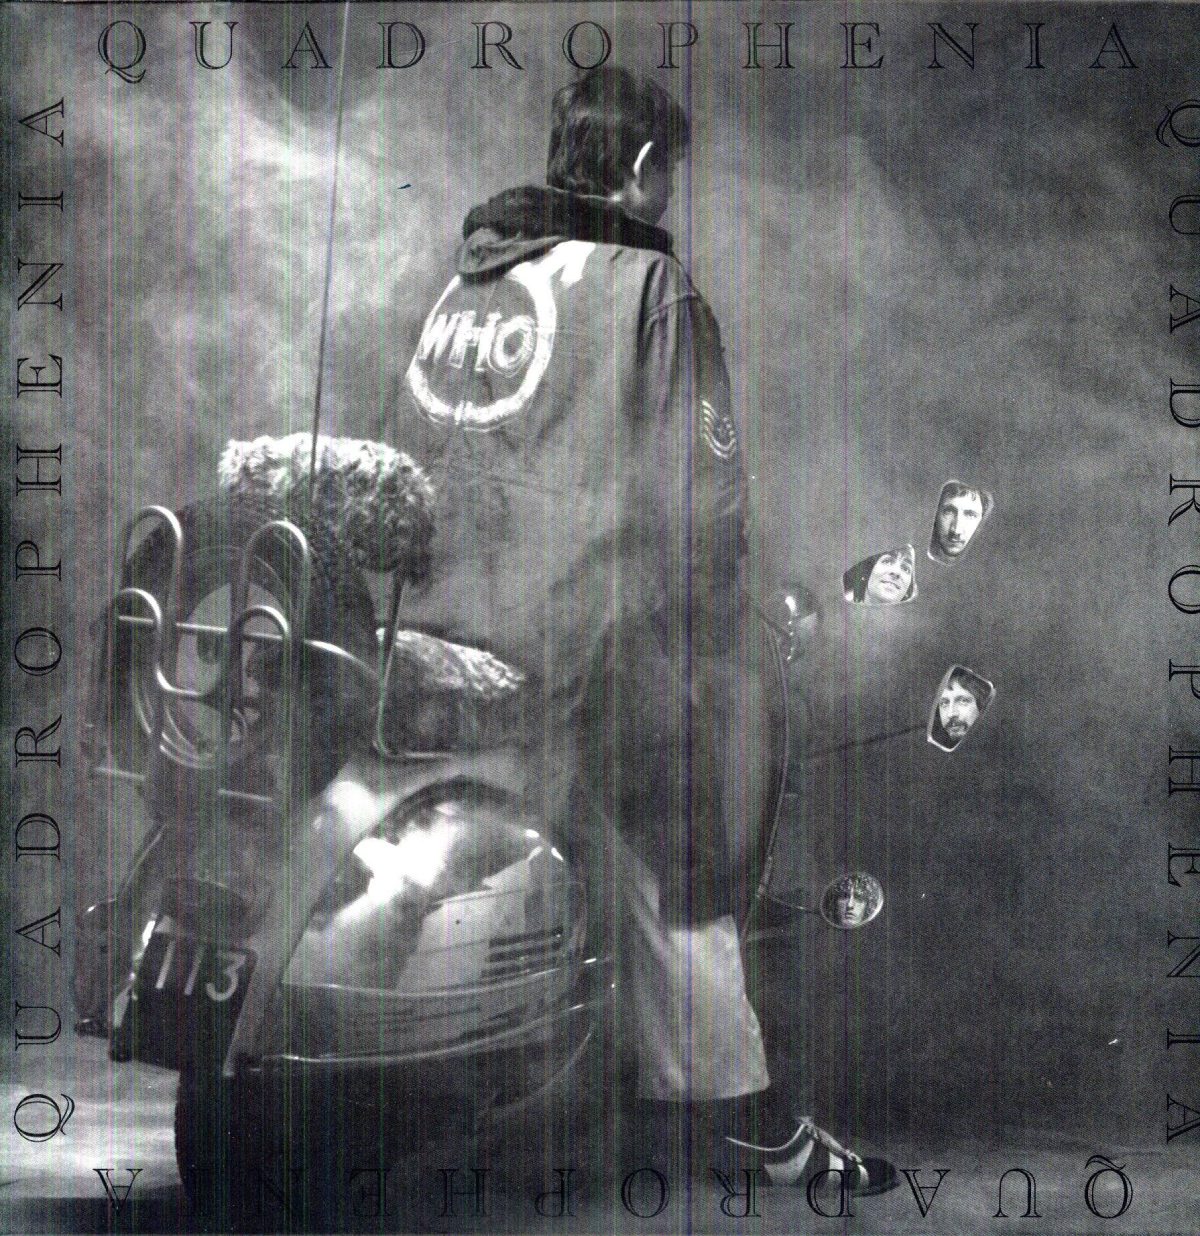 Couverture de l'album "Quadrophenia" des Who.